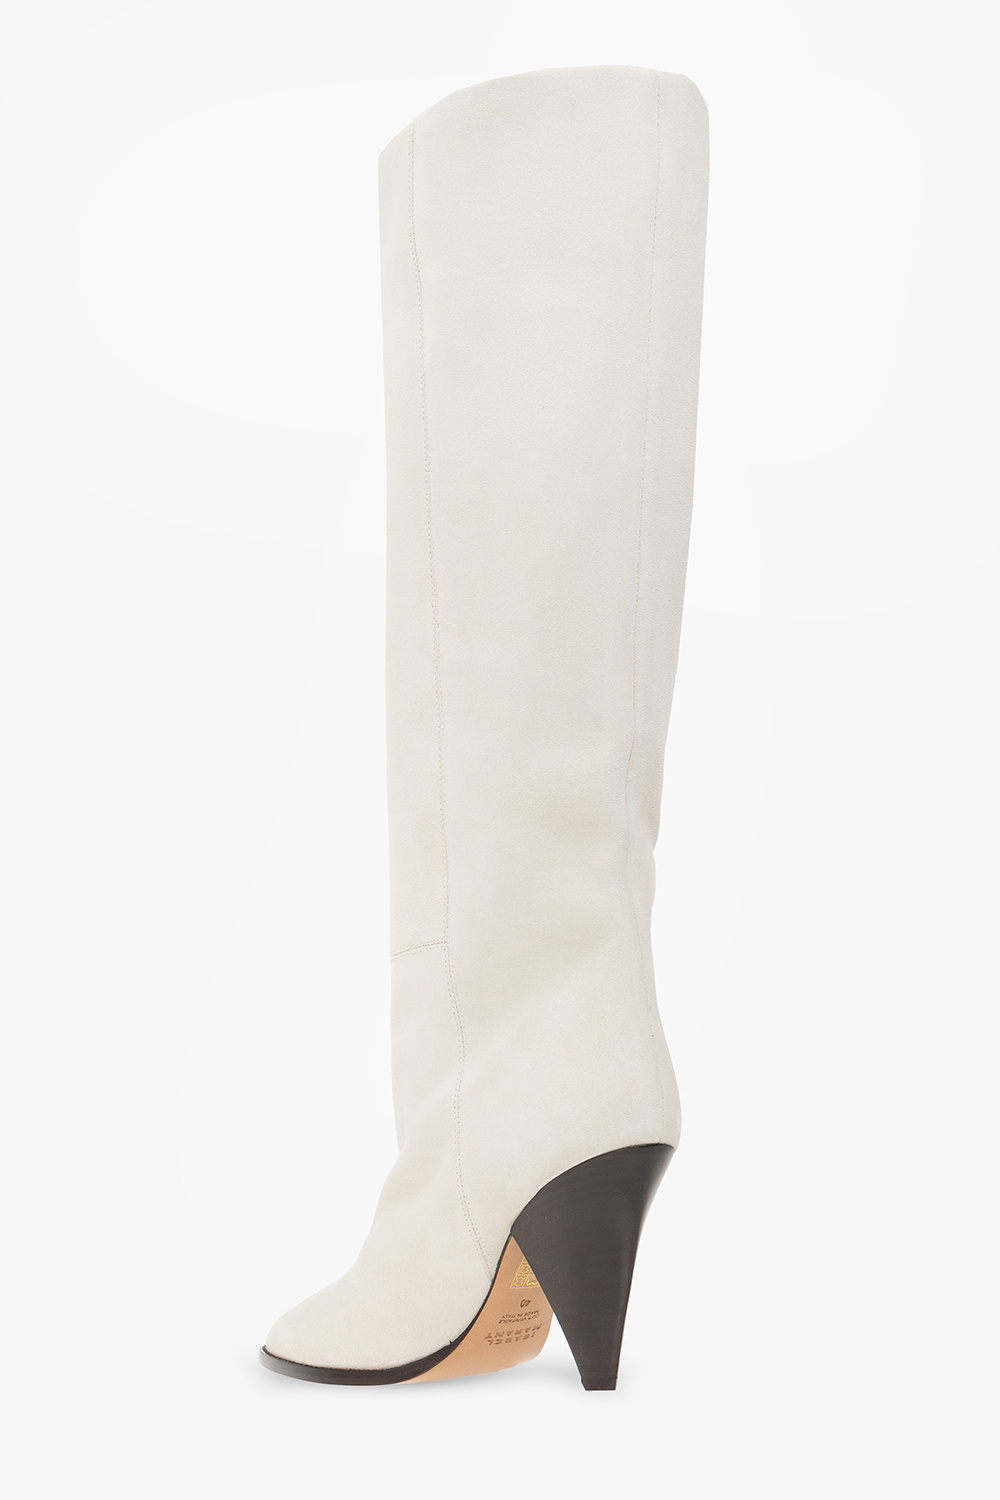 Isabel Marant ‘Ririo’ heeled boots